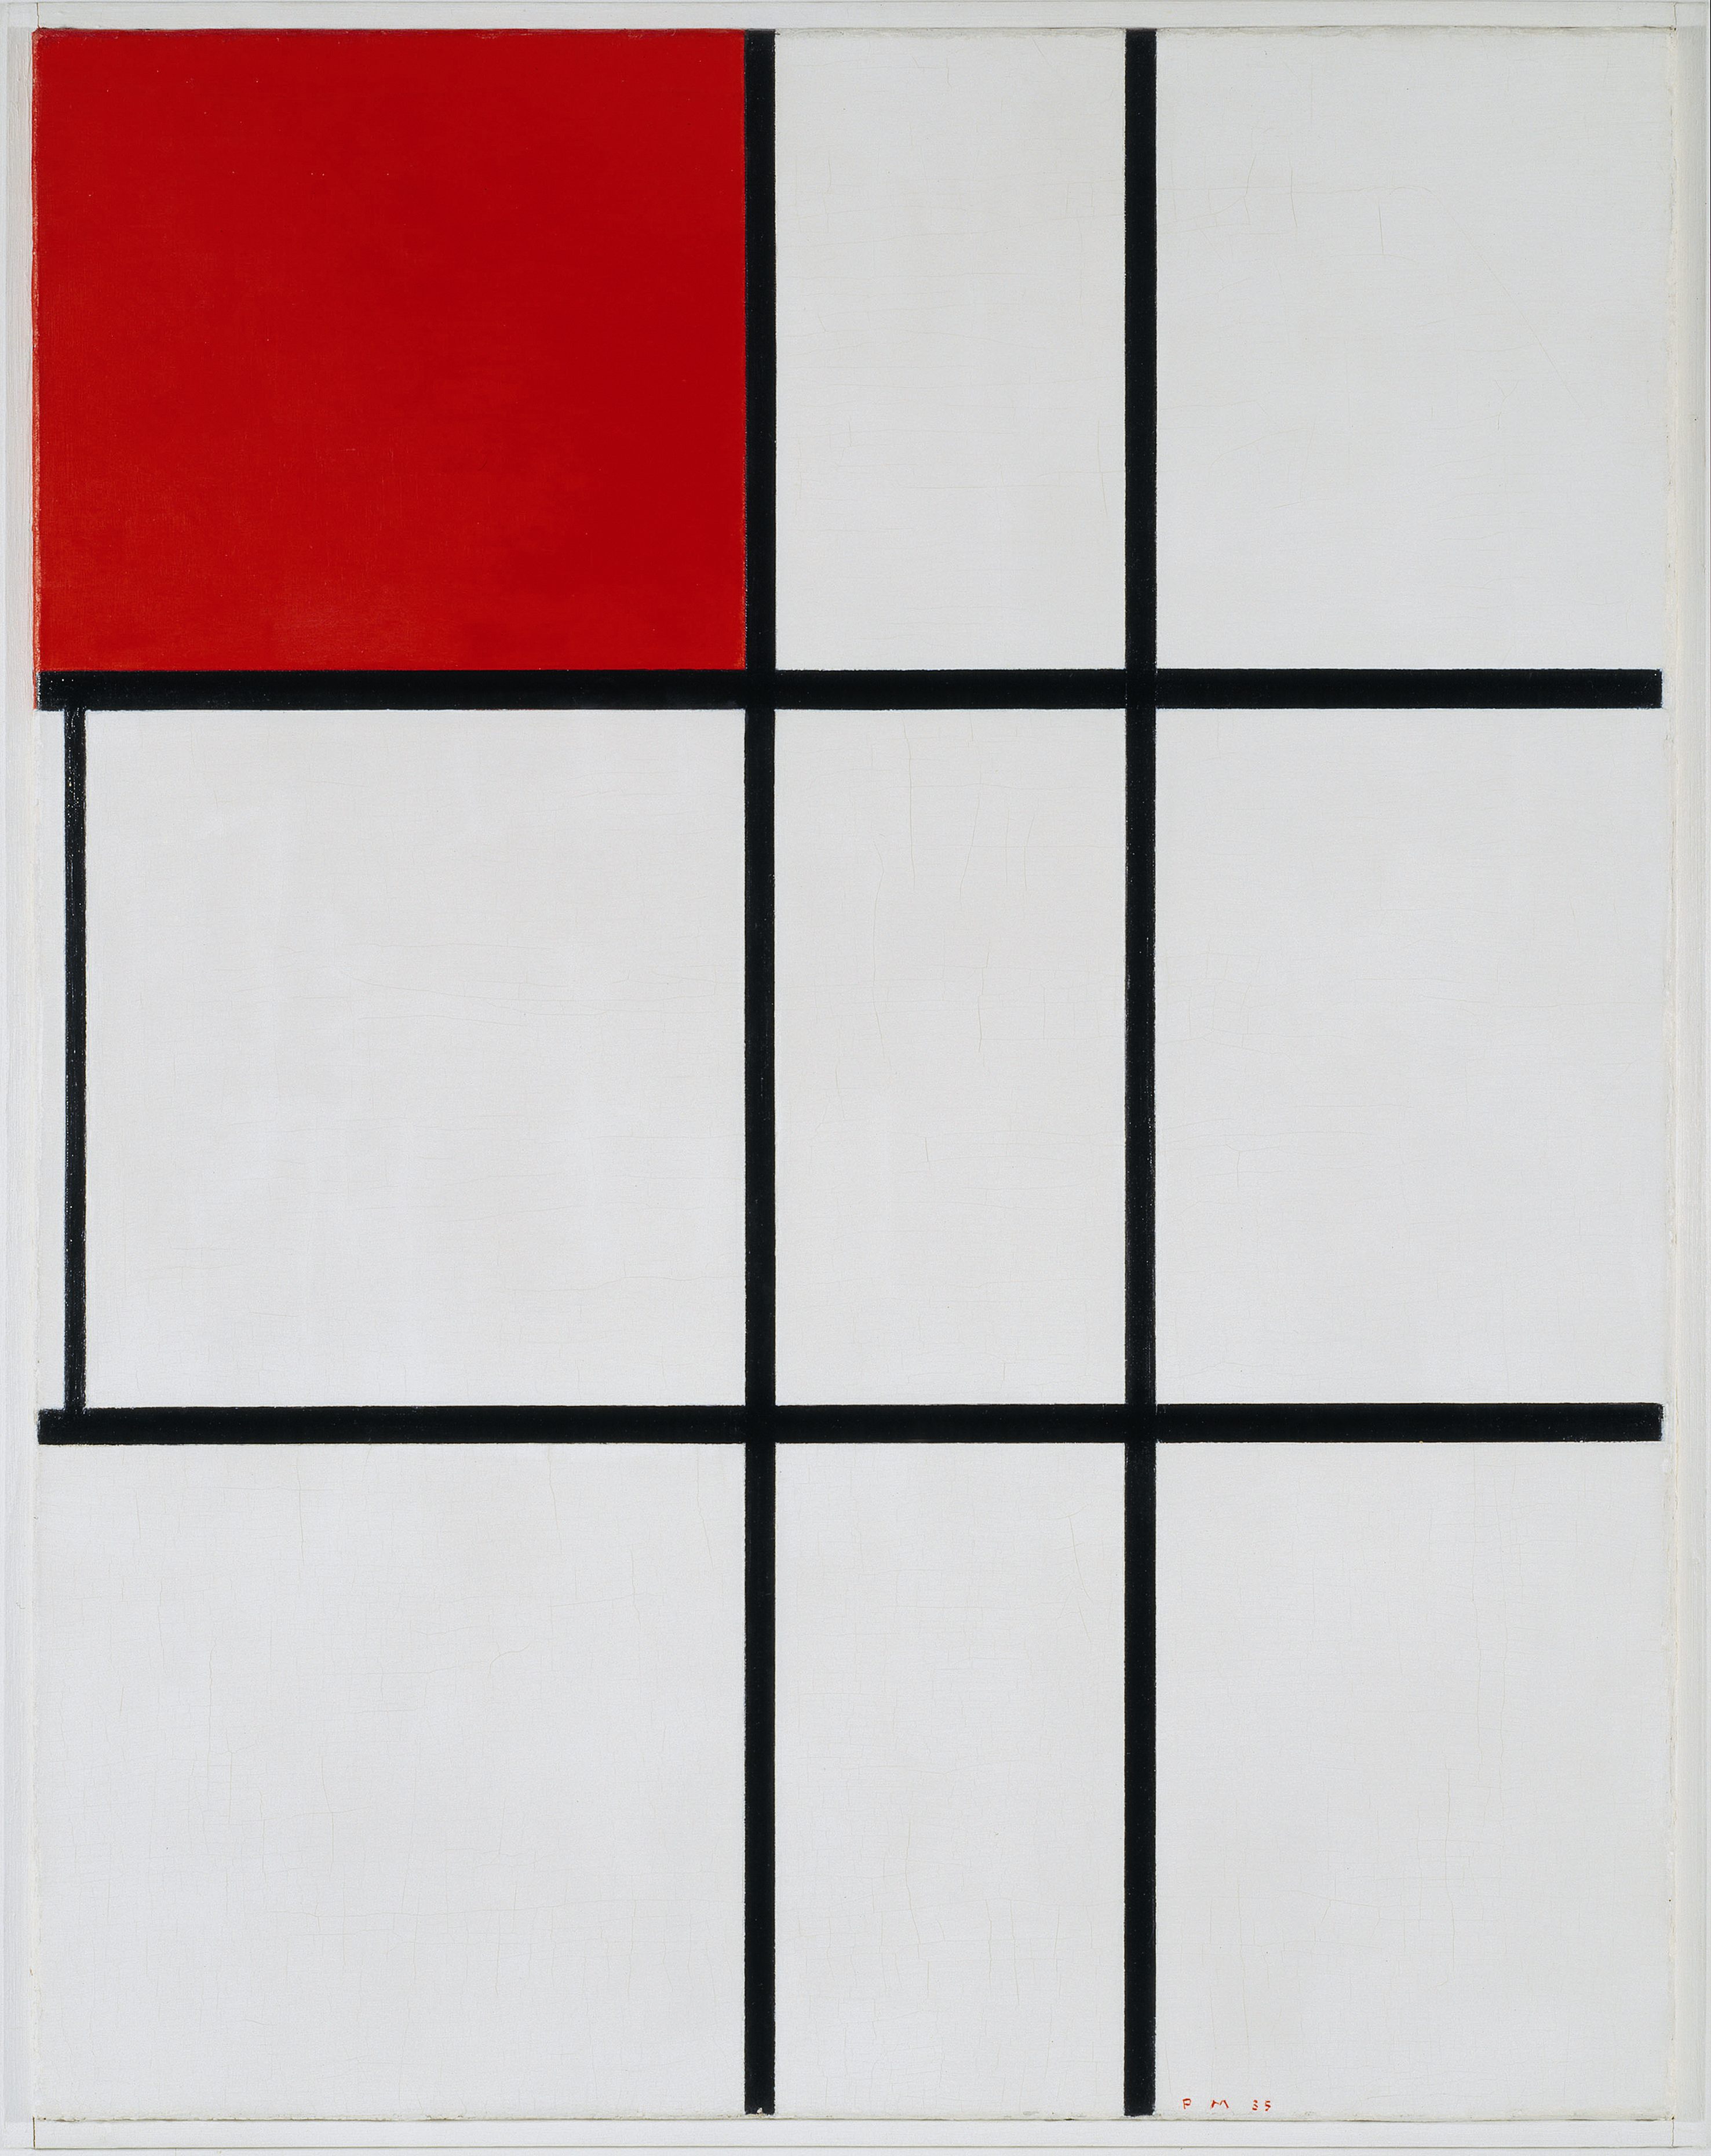 Kompozycja B (nr II) z czerwienią by Piet Mondrian - 1935 - 80.3 x 63.3 cm 